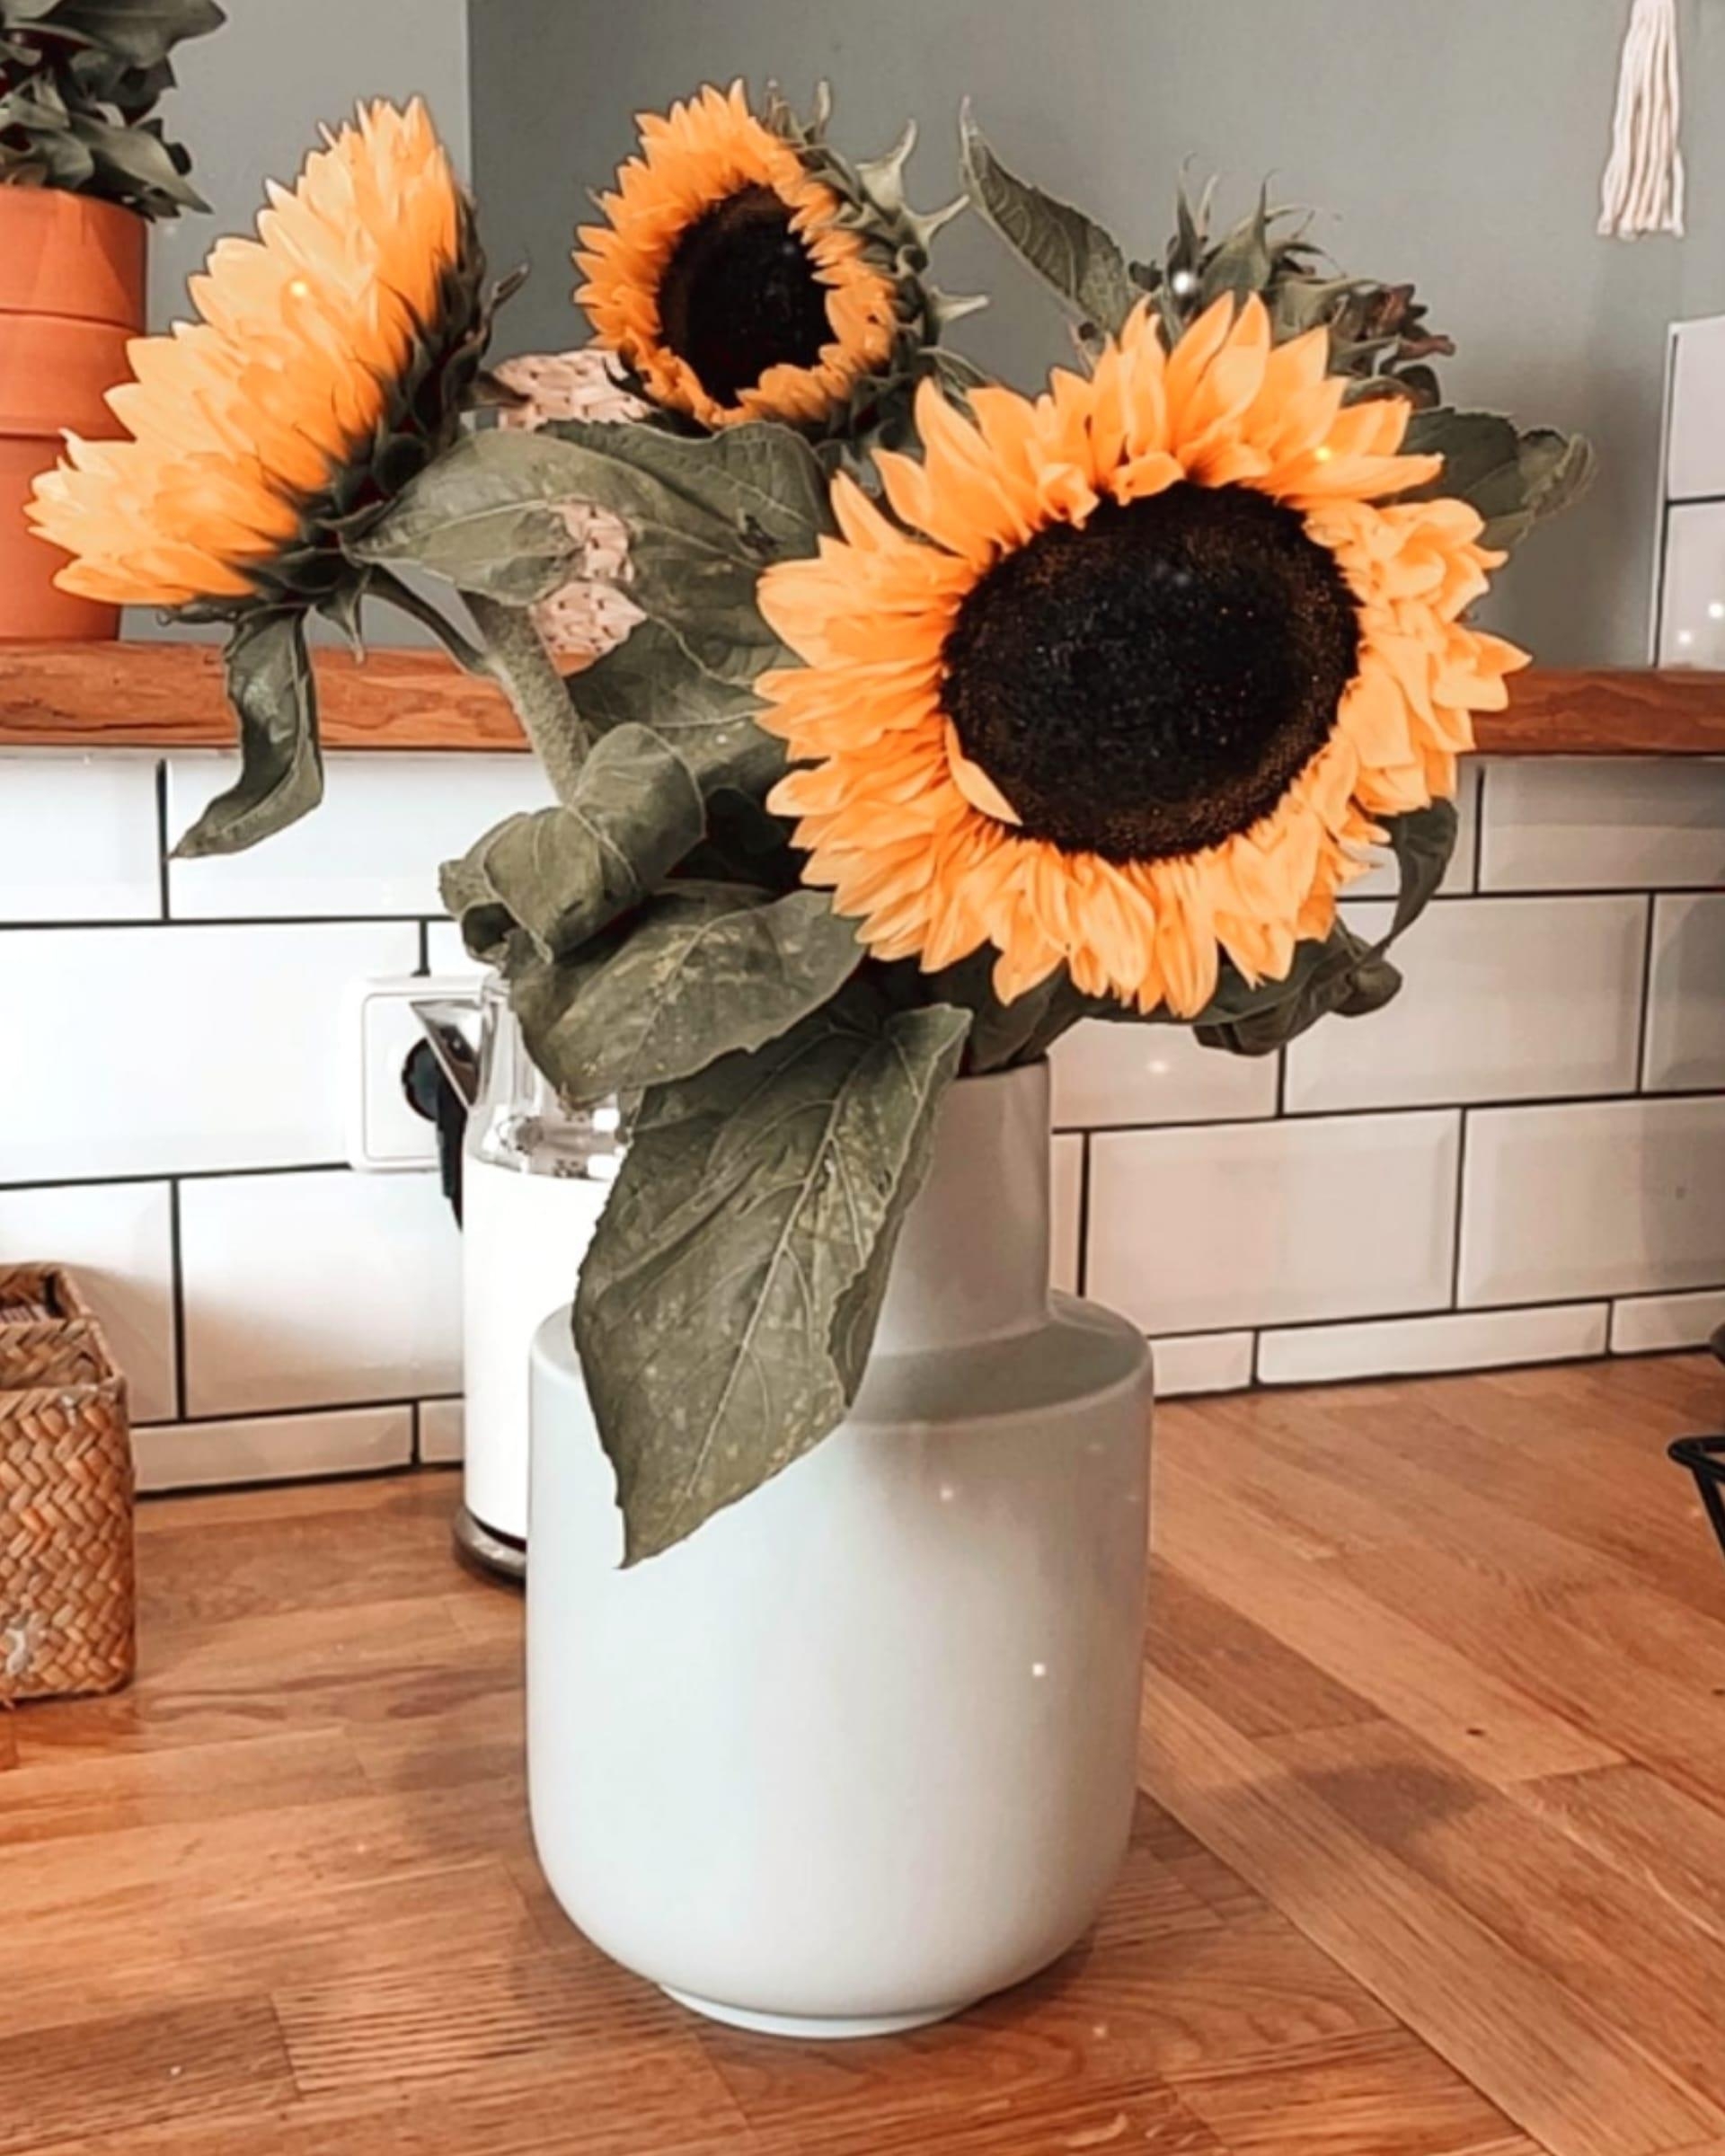 Ich liebe Sonnenblumen einfach so sehr😍

#bohohome #skandiboho #ethno #sunflowers #flowerpower